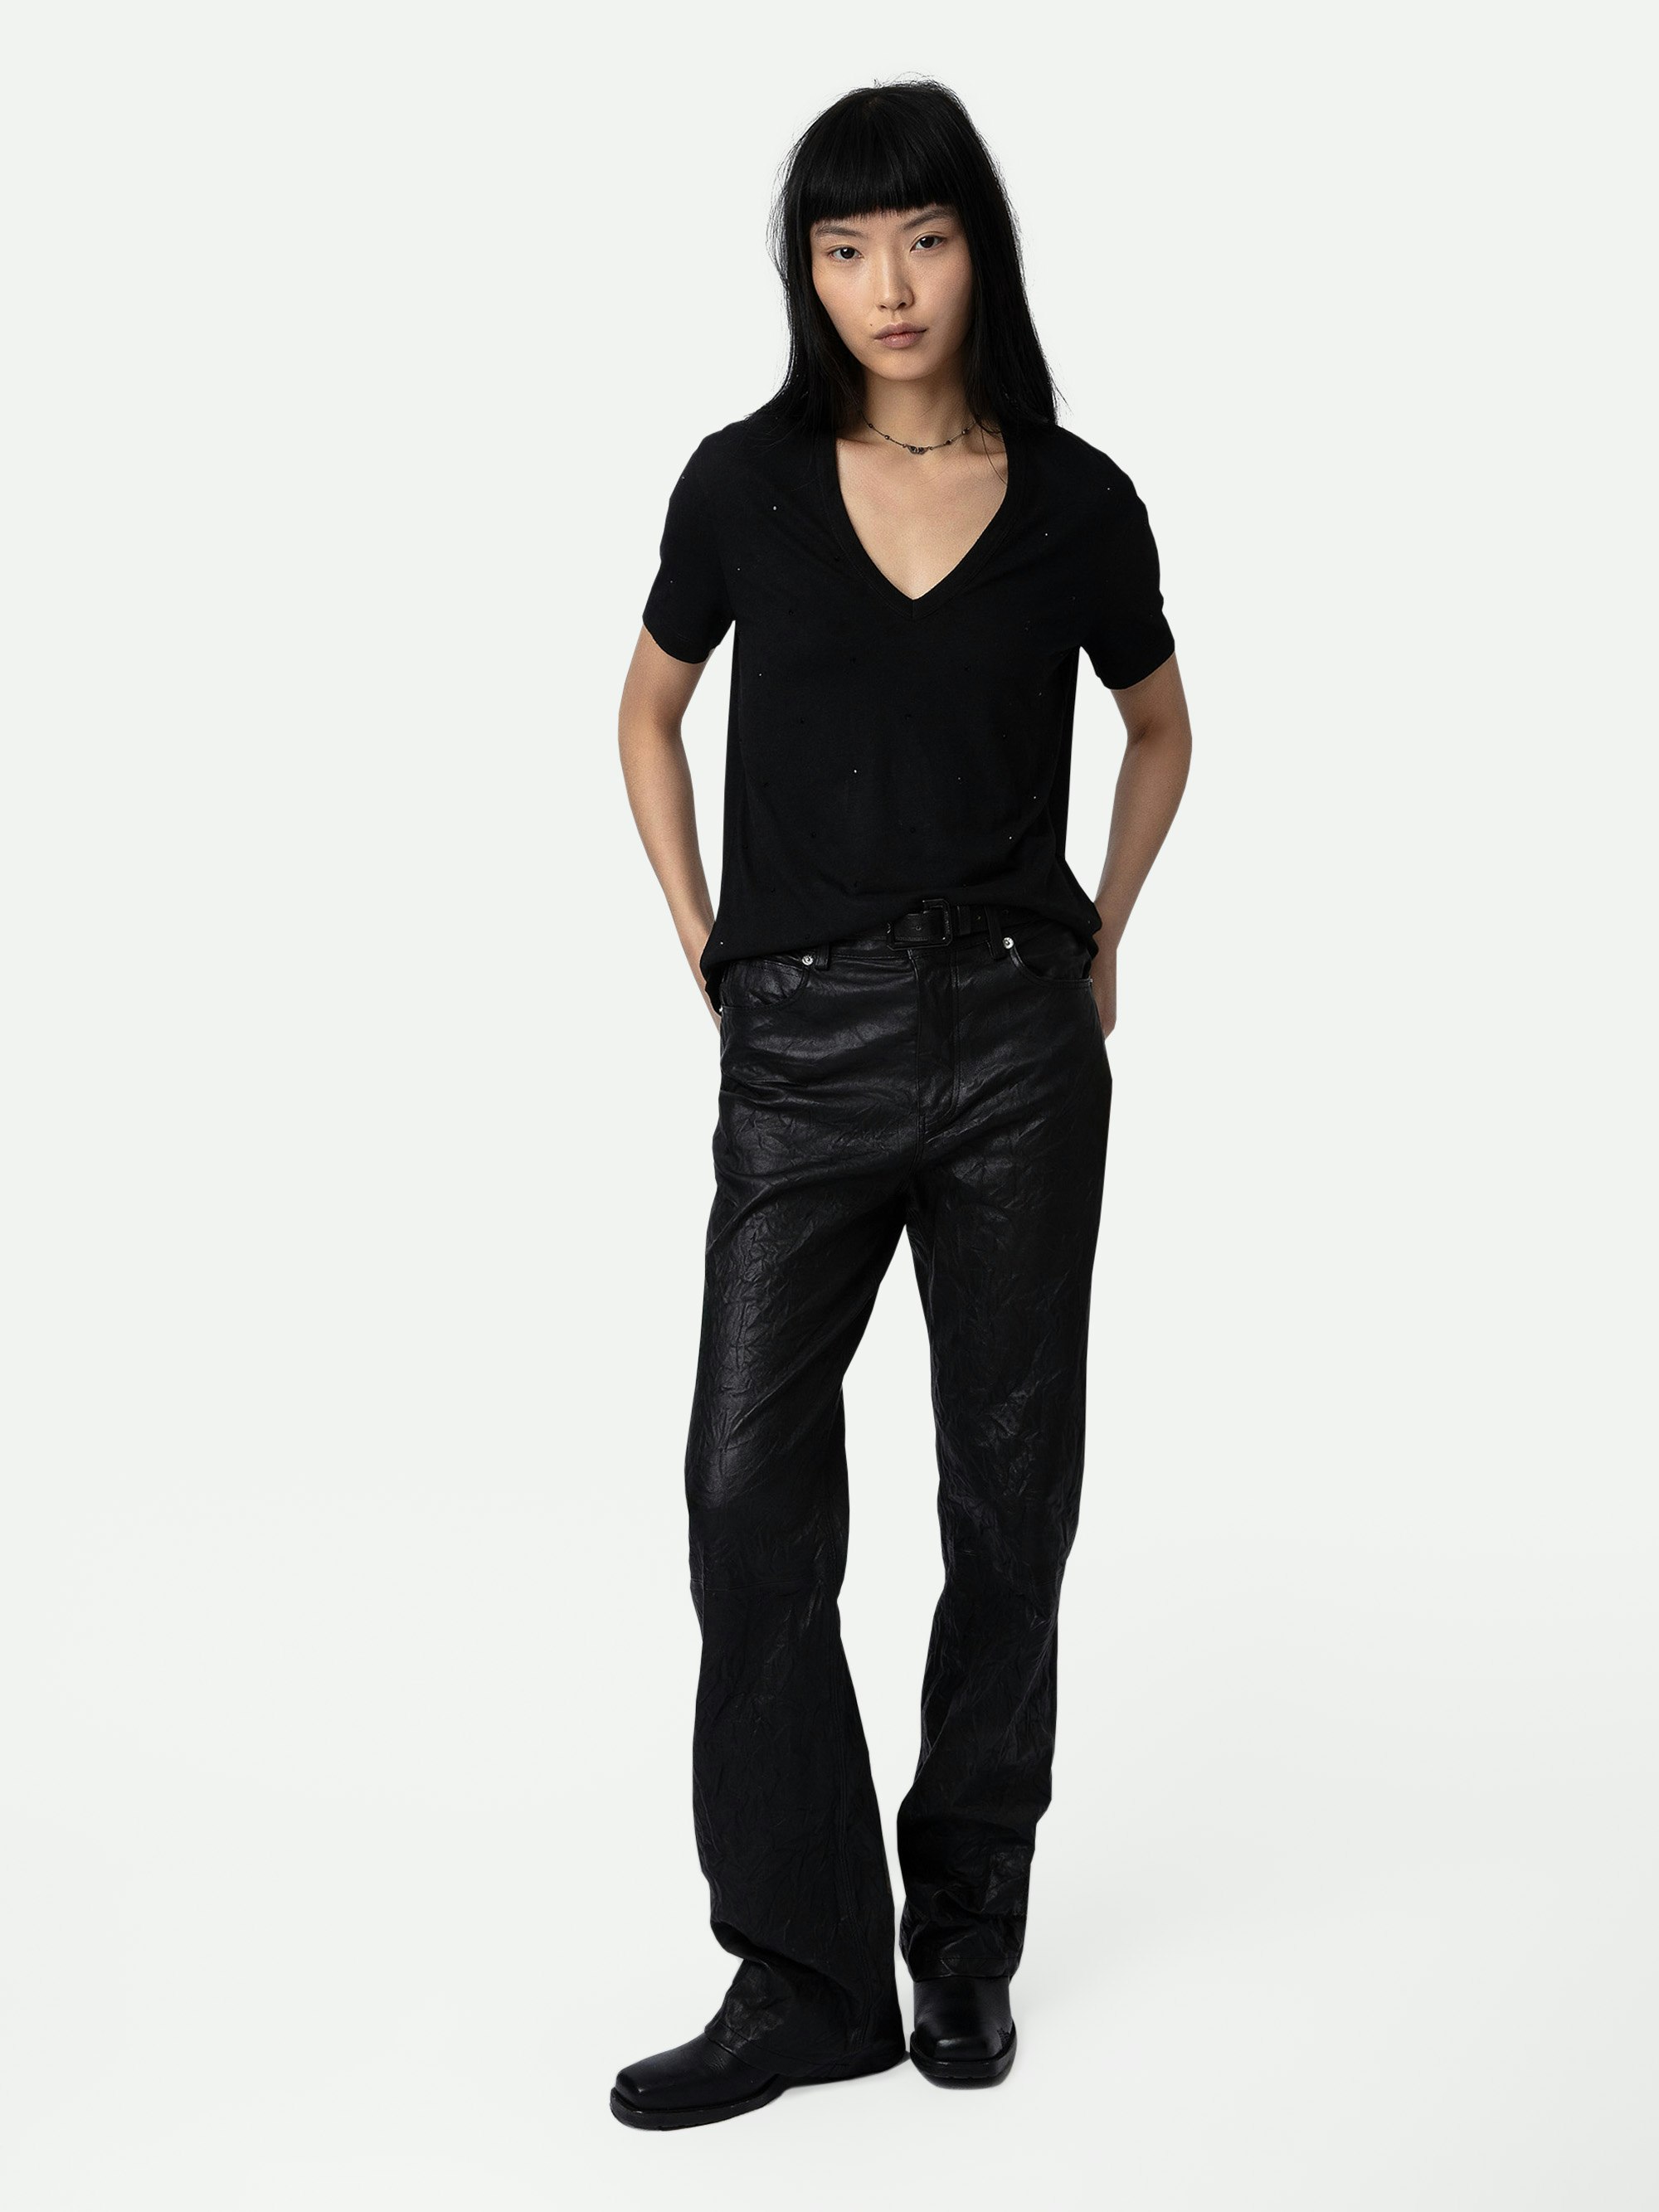 T-shirt Wassa Strass - T-shirt noir à col V, manches courtes et strass.